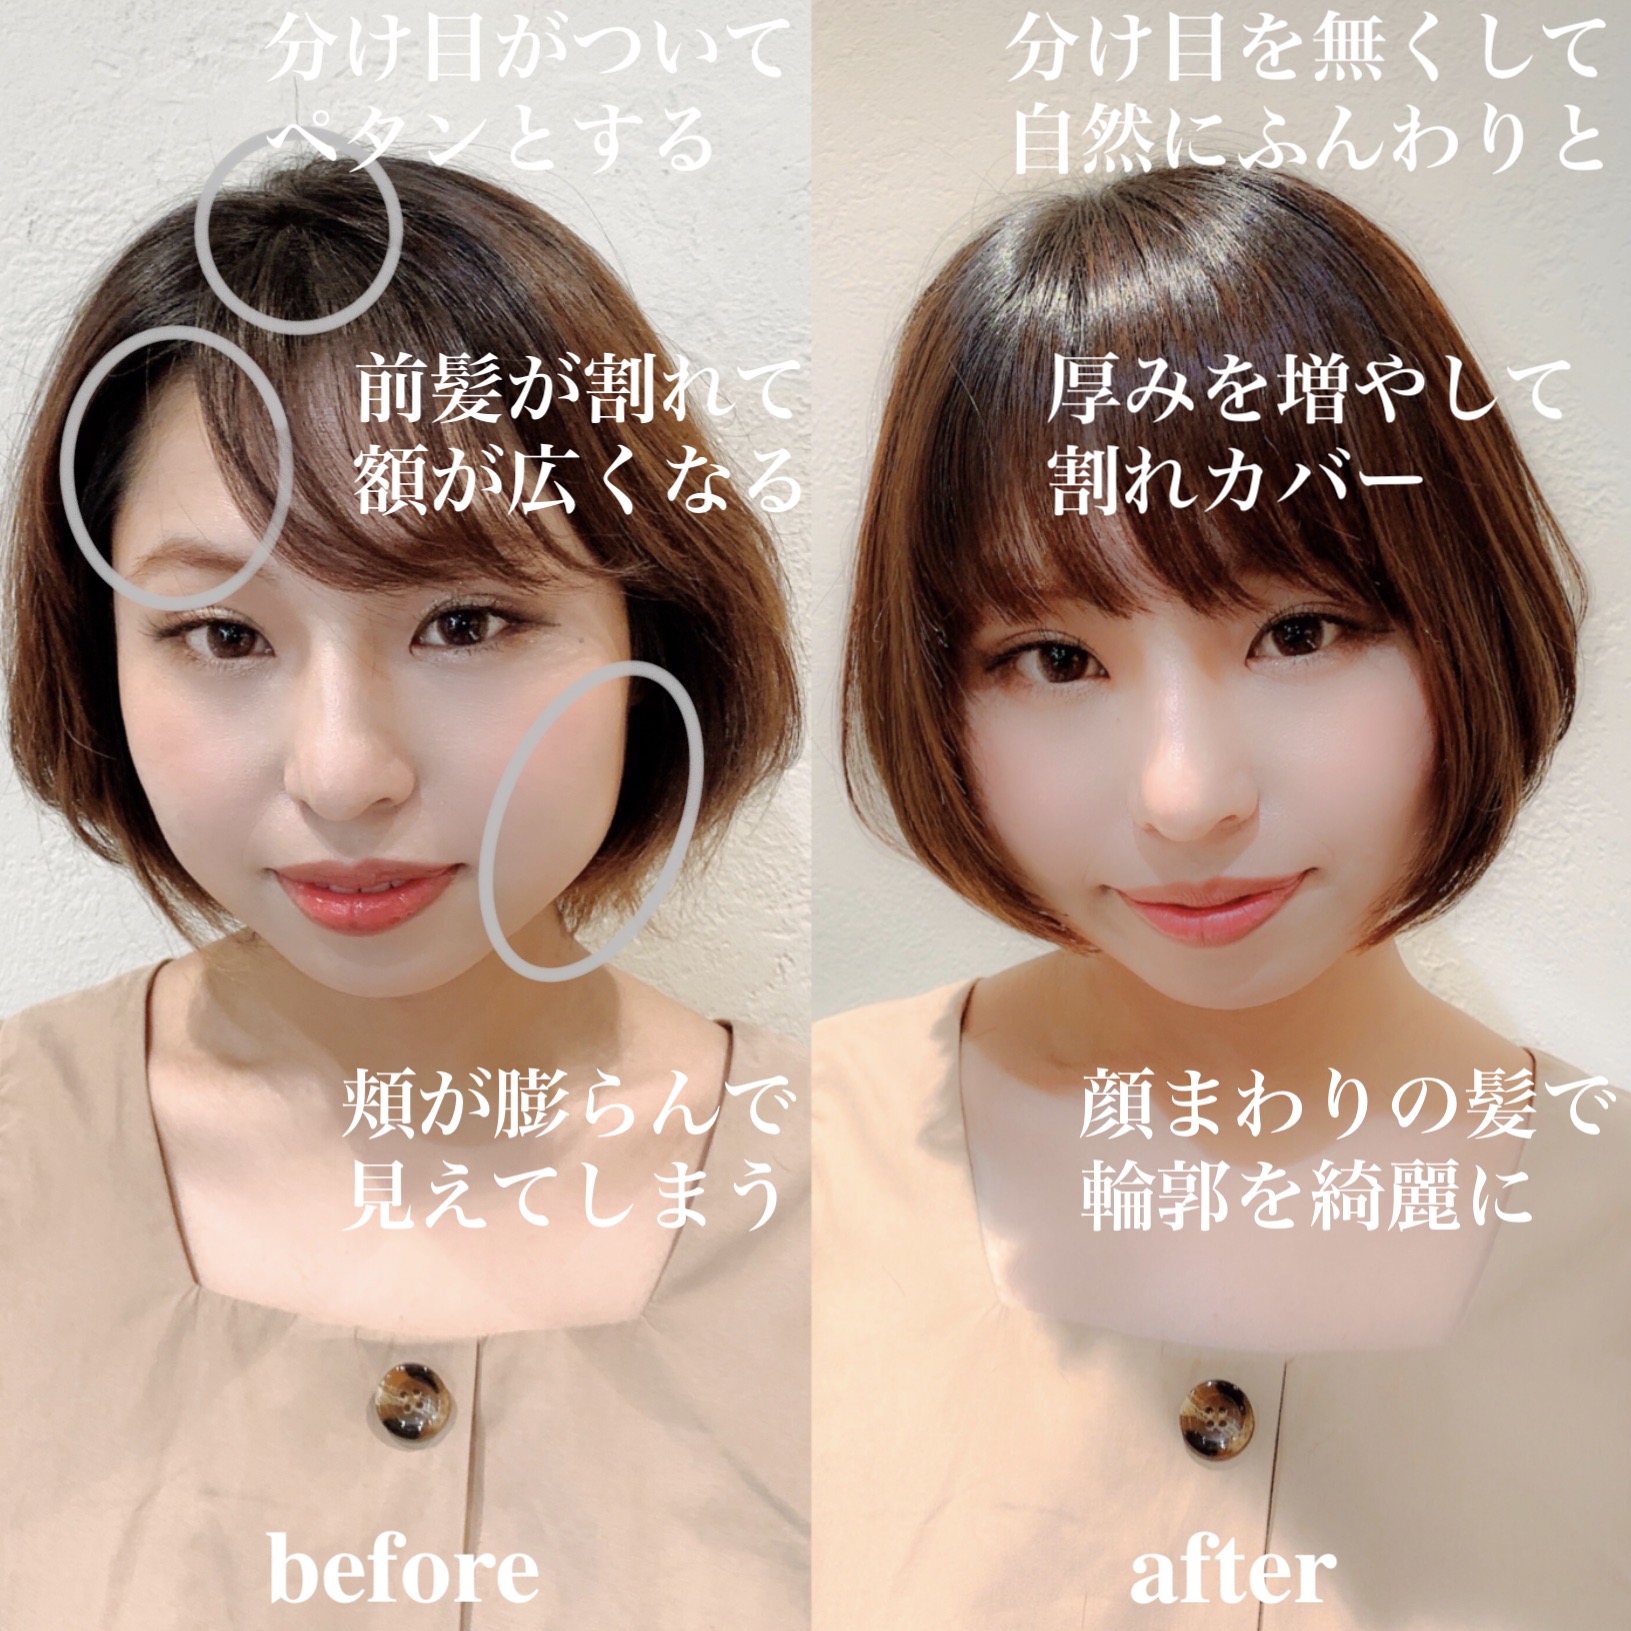 22年秋 大人ボブを 前髪あり 前髪なし の変化で 今の自分に似合う髪型に 似合わせカットが上手い東京の美容師 美容室minx銀座 蛭田のブログ